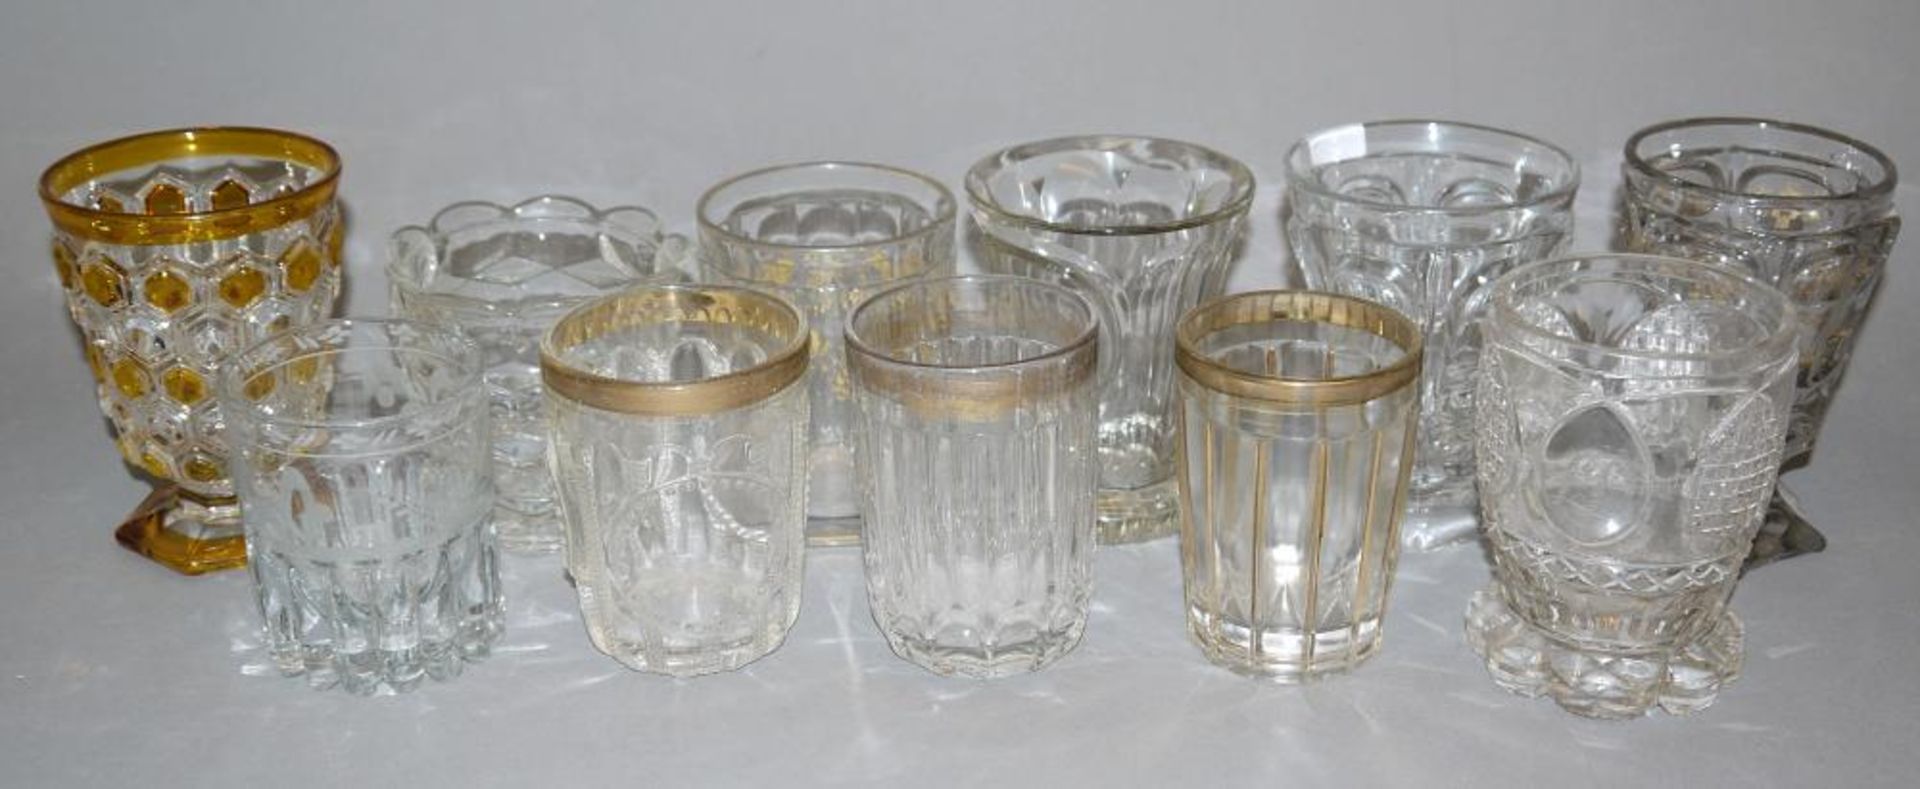 Sammlungs-Nachlass: 11 Becher aus Pressglas, Böhmen, 19. Jh. Farbloses Glas, einmal teilweise